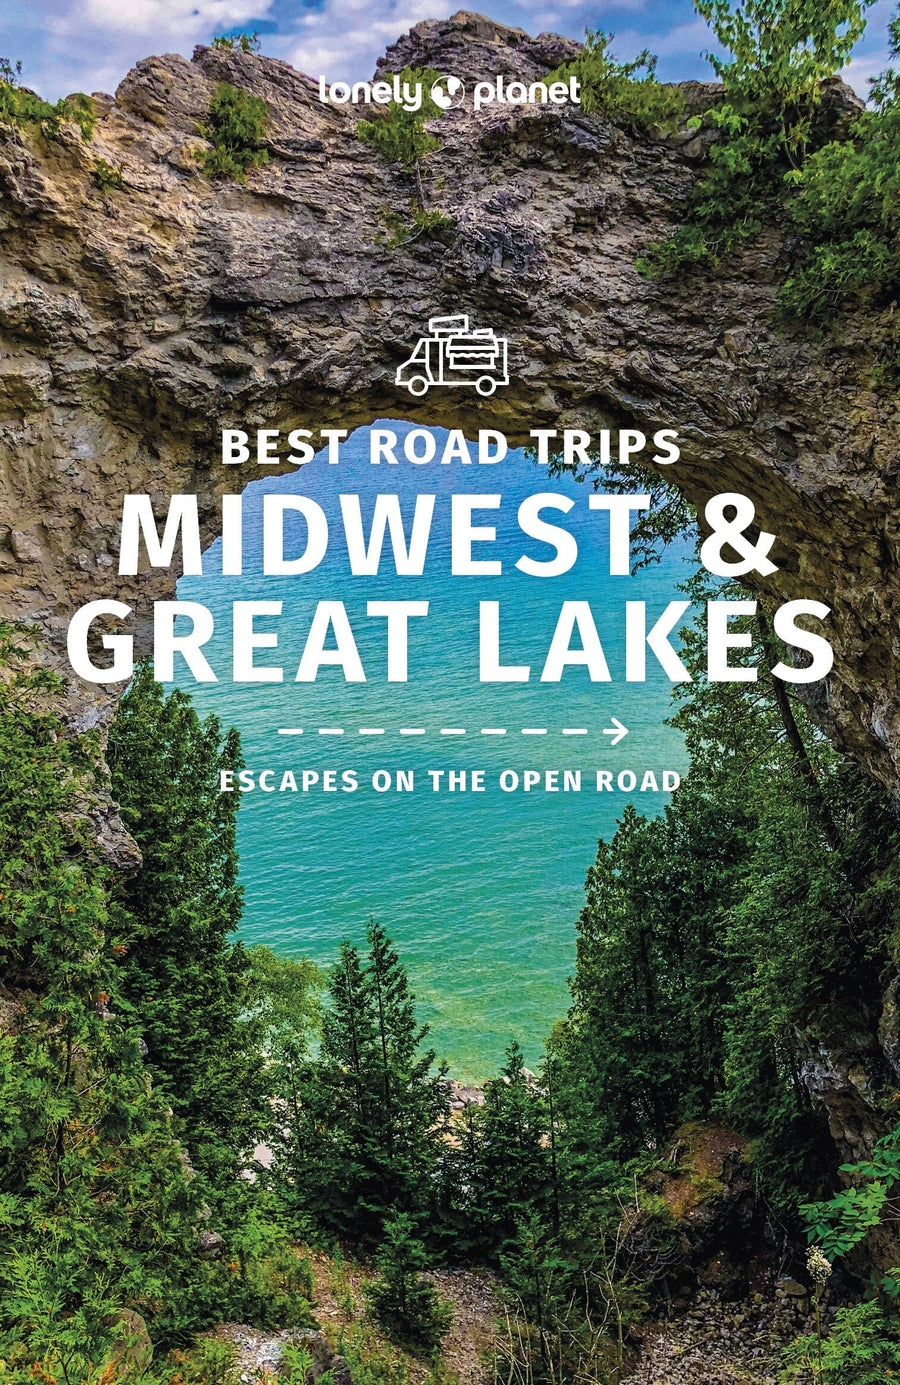 Guide de voyage (en anglais) - Best Road Trips : Midwest & Great Lakes | Lonely Planet guide de voyage Lonely Planet EN 